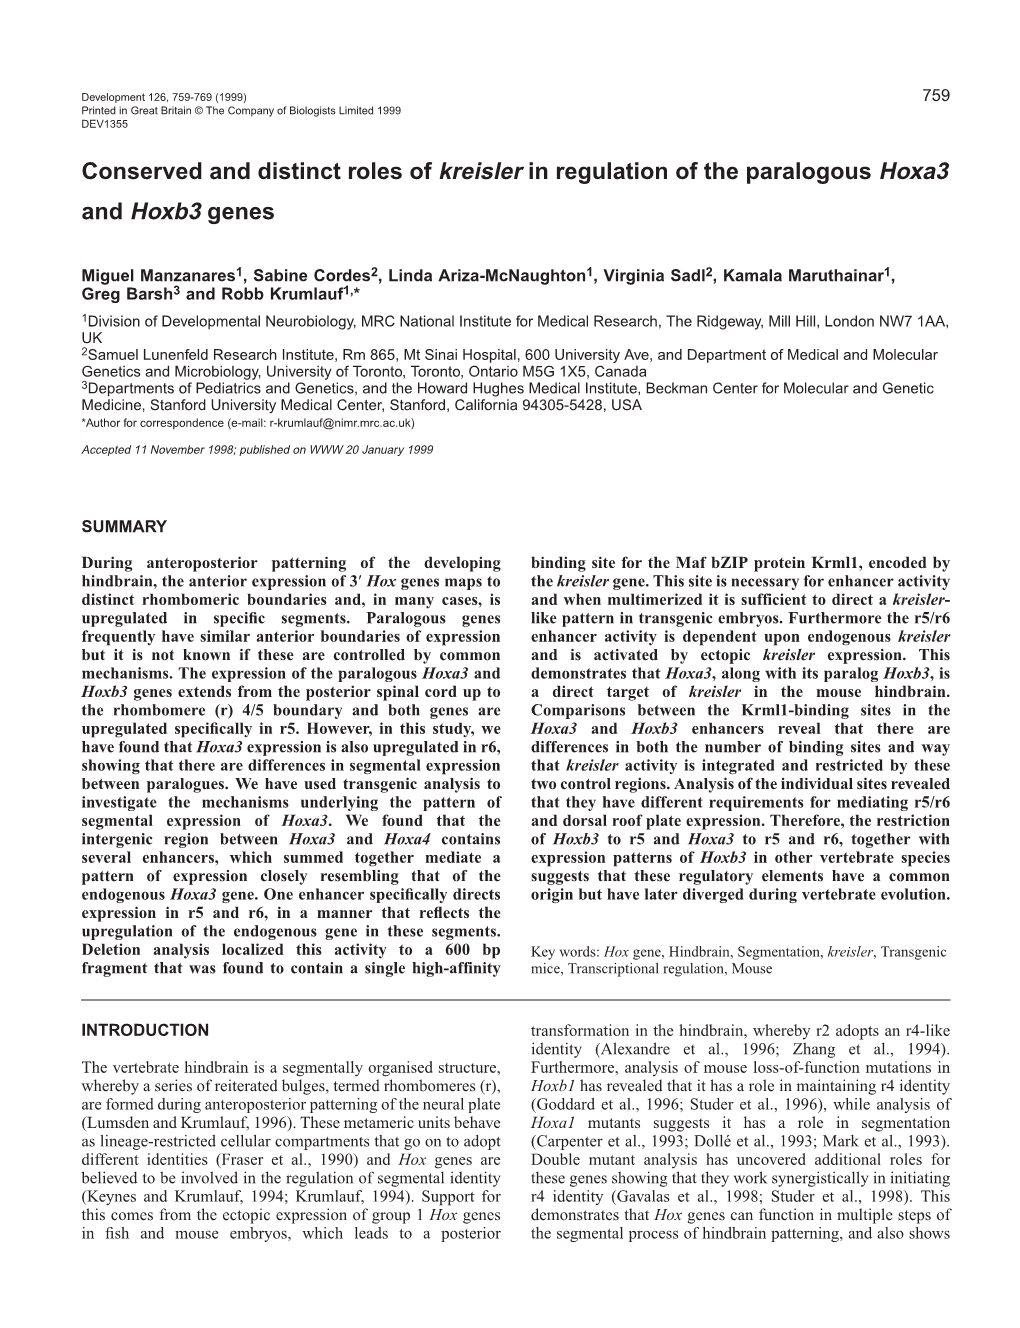 Segmental Regulation of Hoxa3 by Kreisler